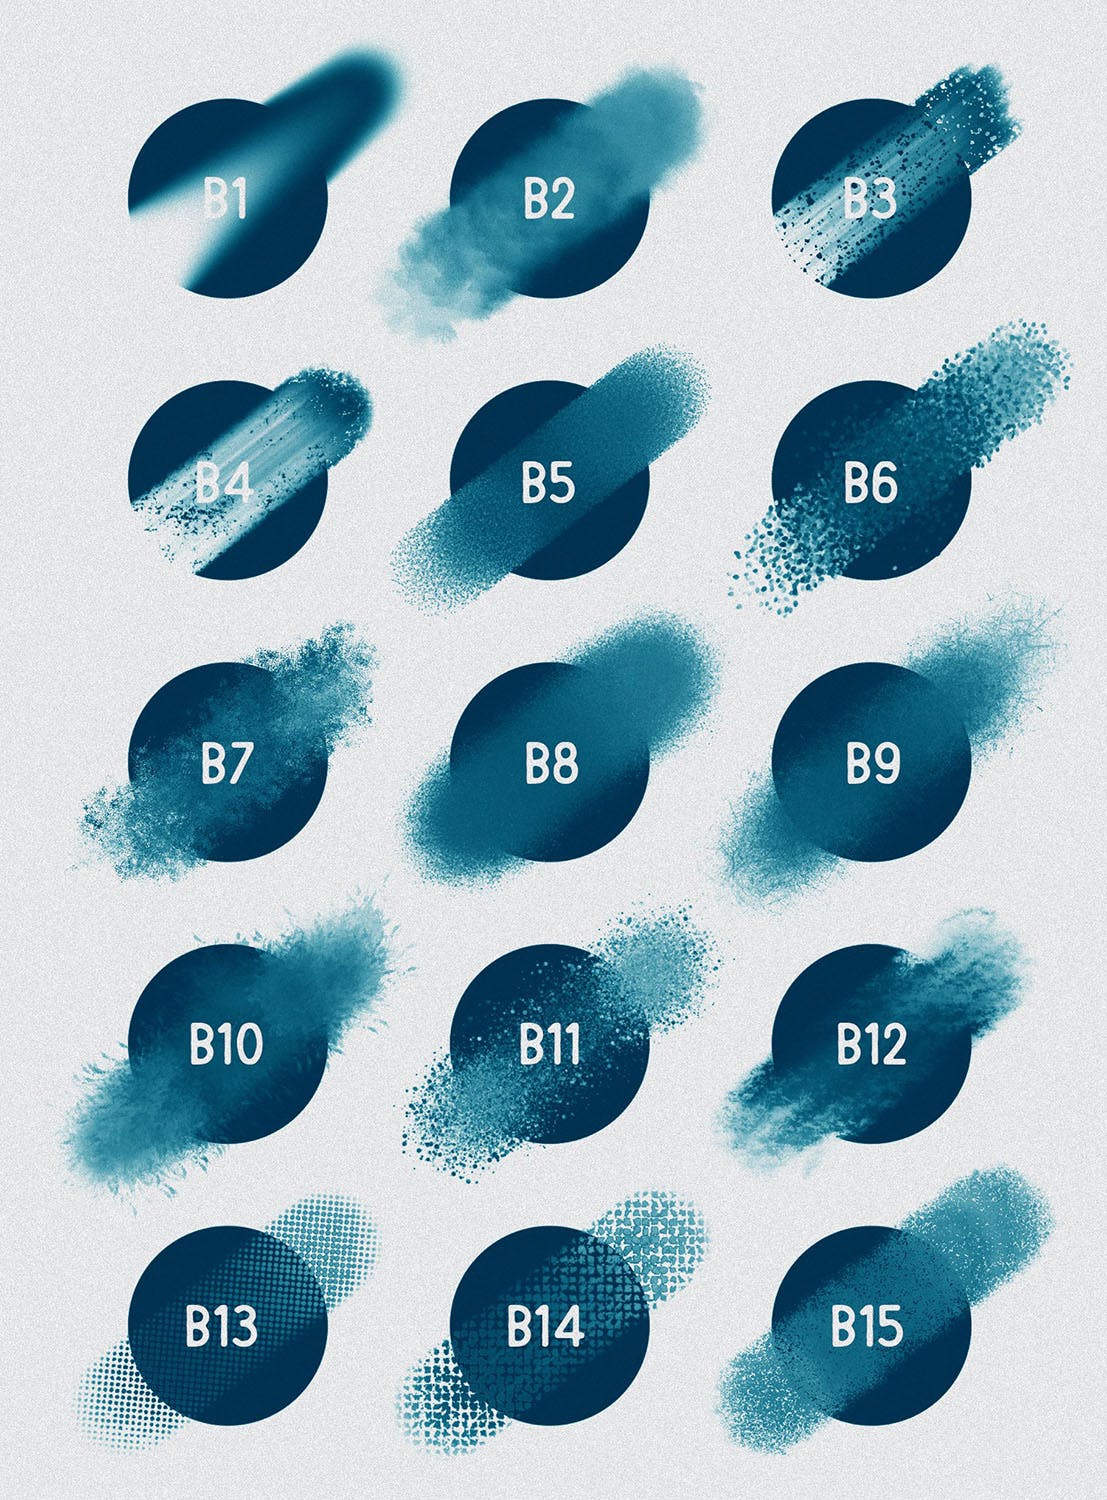 30种不同样式的Procreate专用混合笔刷非凡图库精选 Procreate: Blender Brushes插图(2)